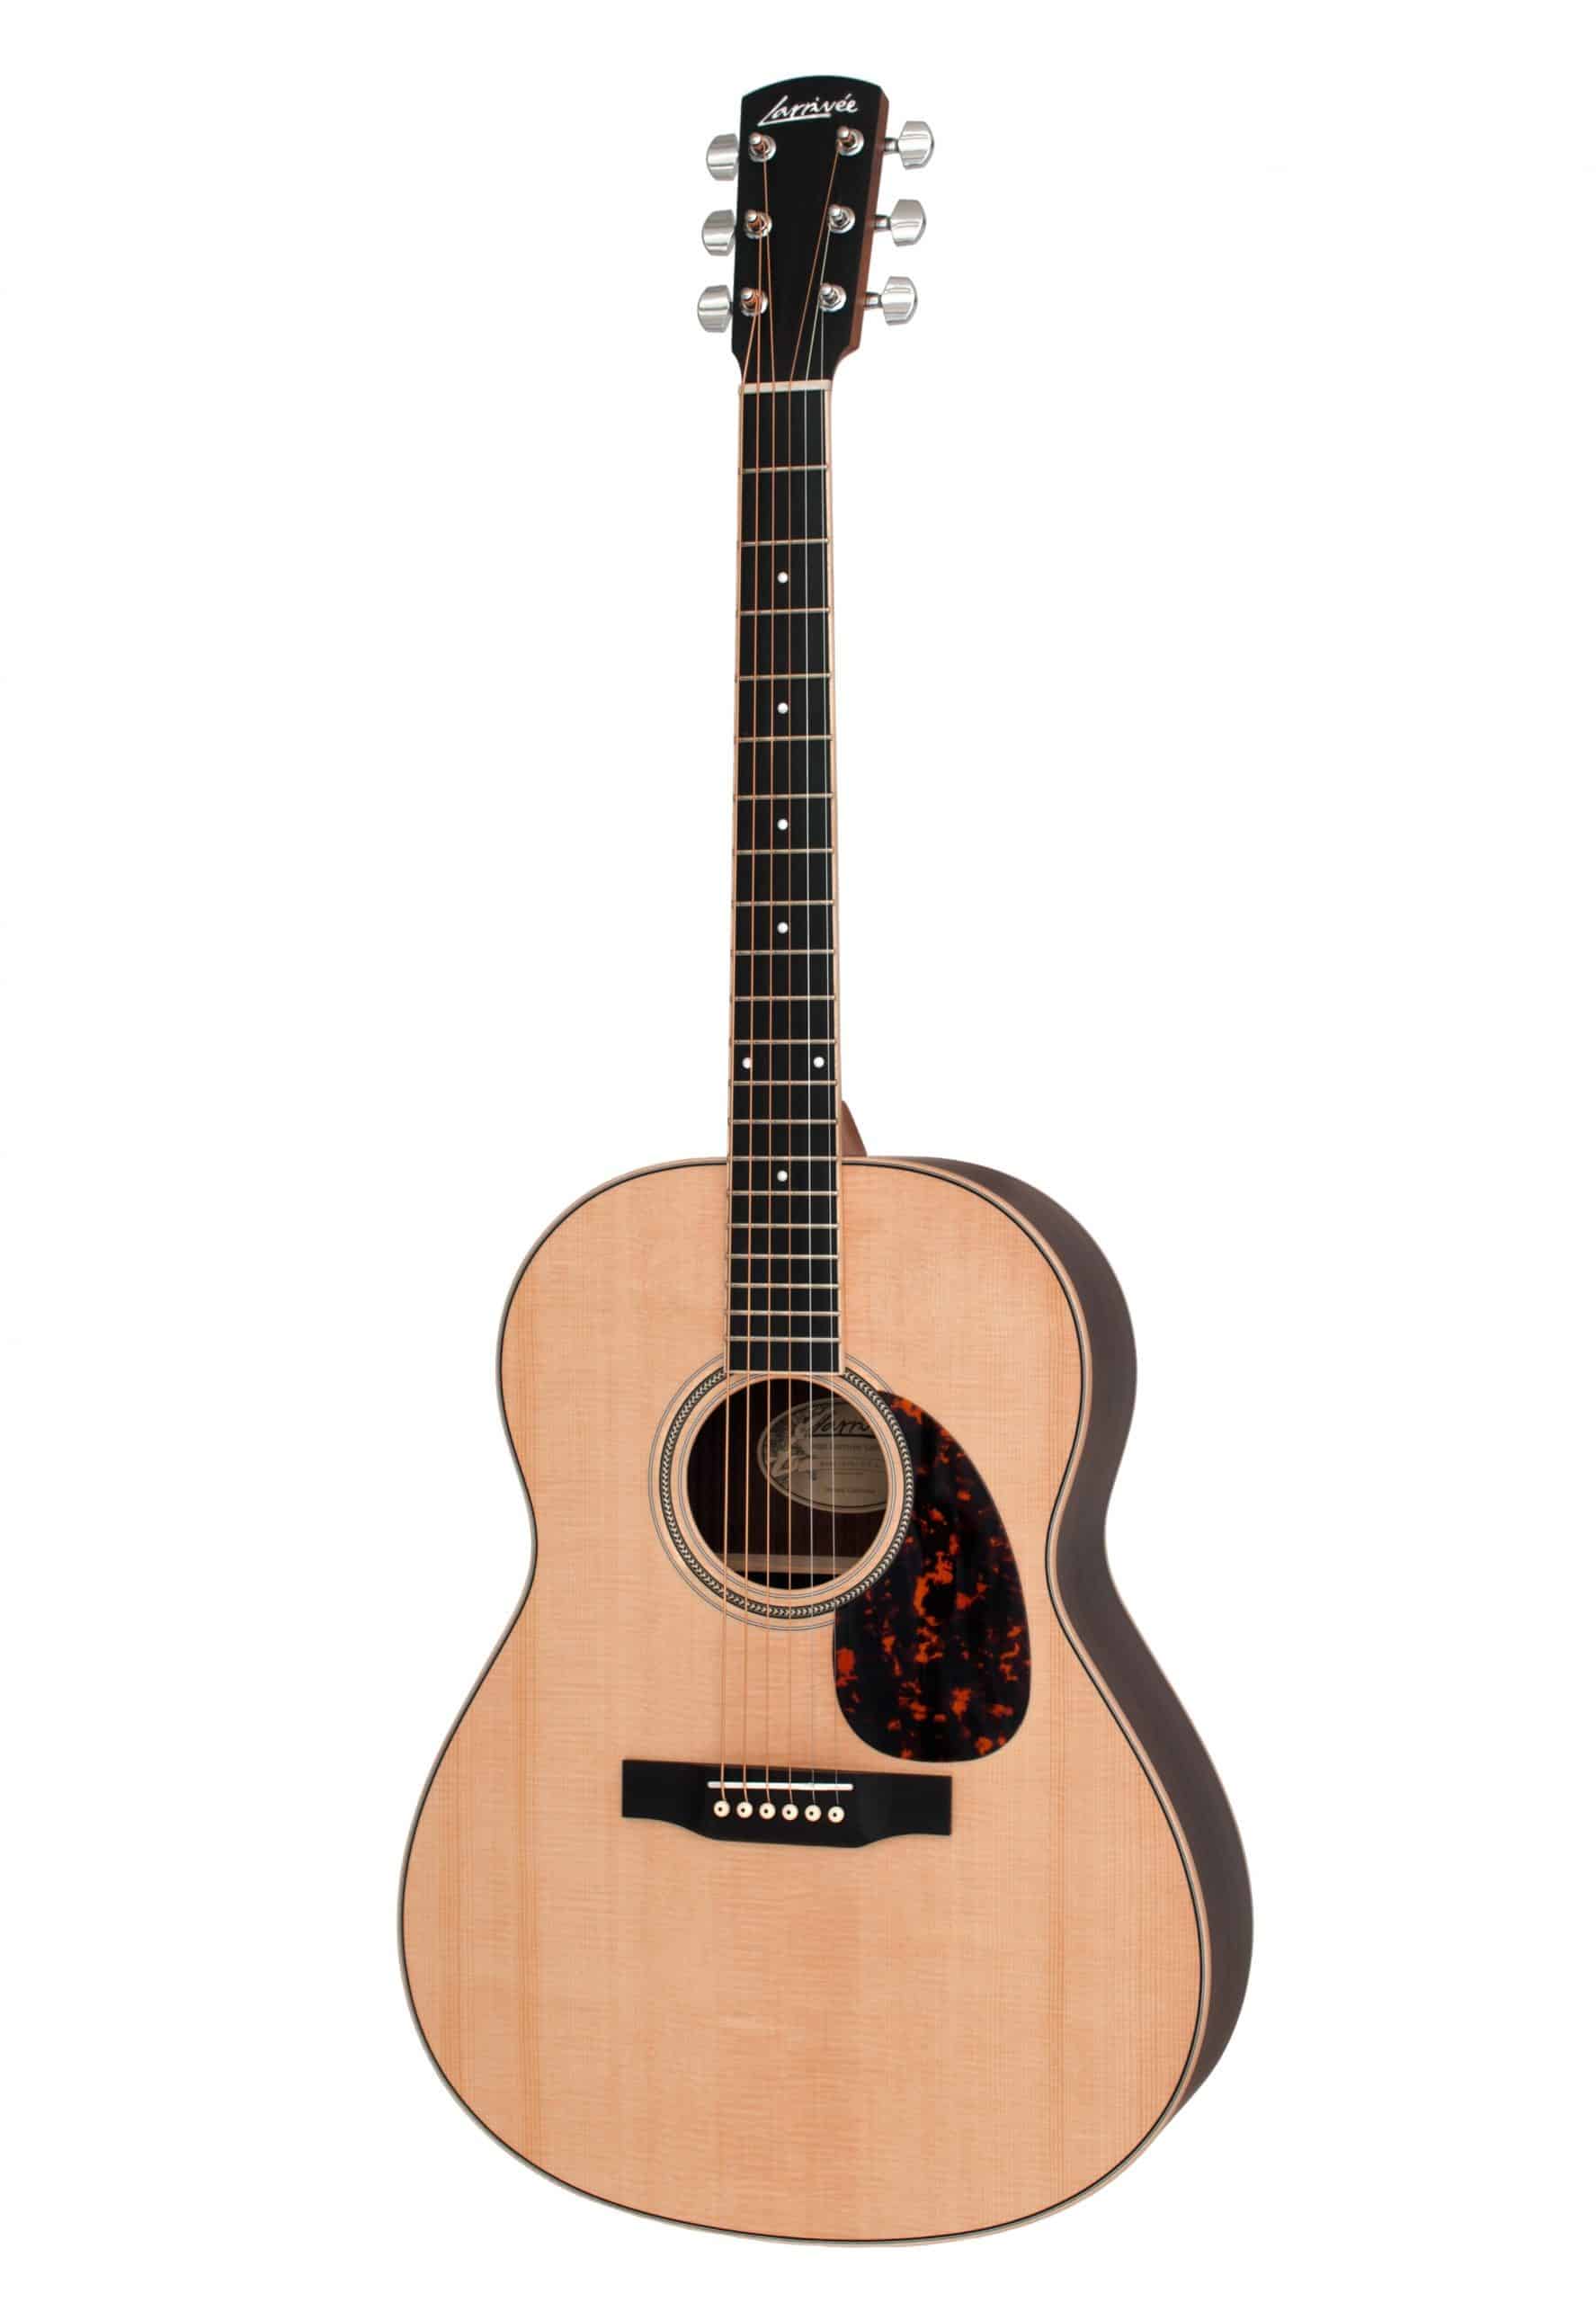 img src="/western-guitar" alt="Larrivée L-03R Indian Rosewood Western Guitar "